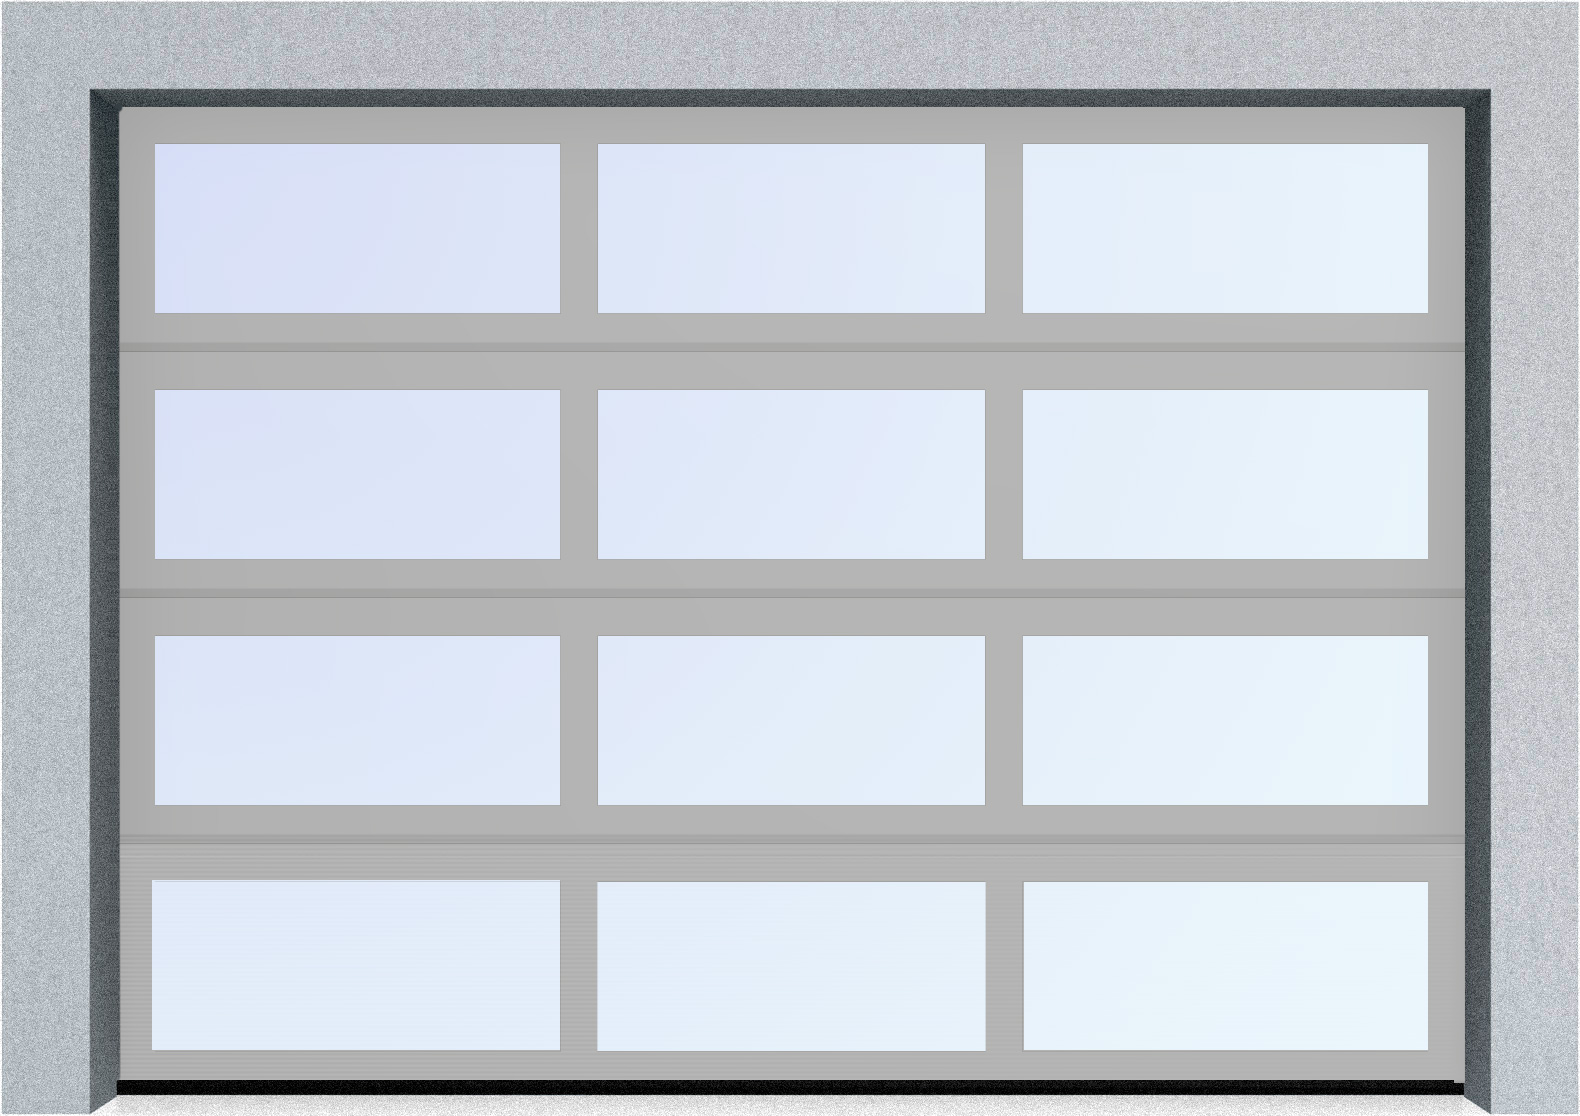  Секционные панорамные ворота серии AluTrend (АЛП) 2375х2500 нижняя панель стандартные цвета, фото 9 